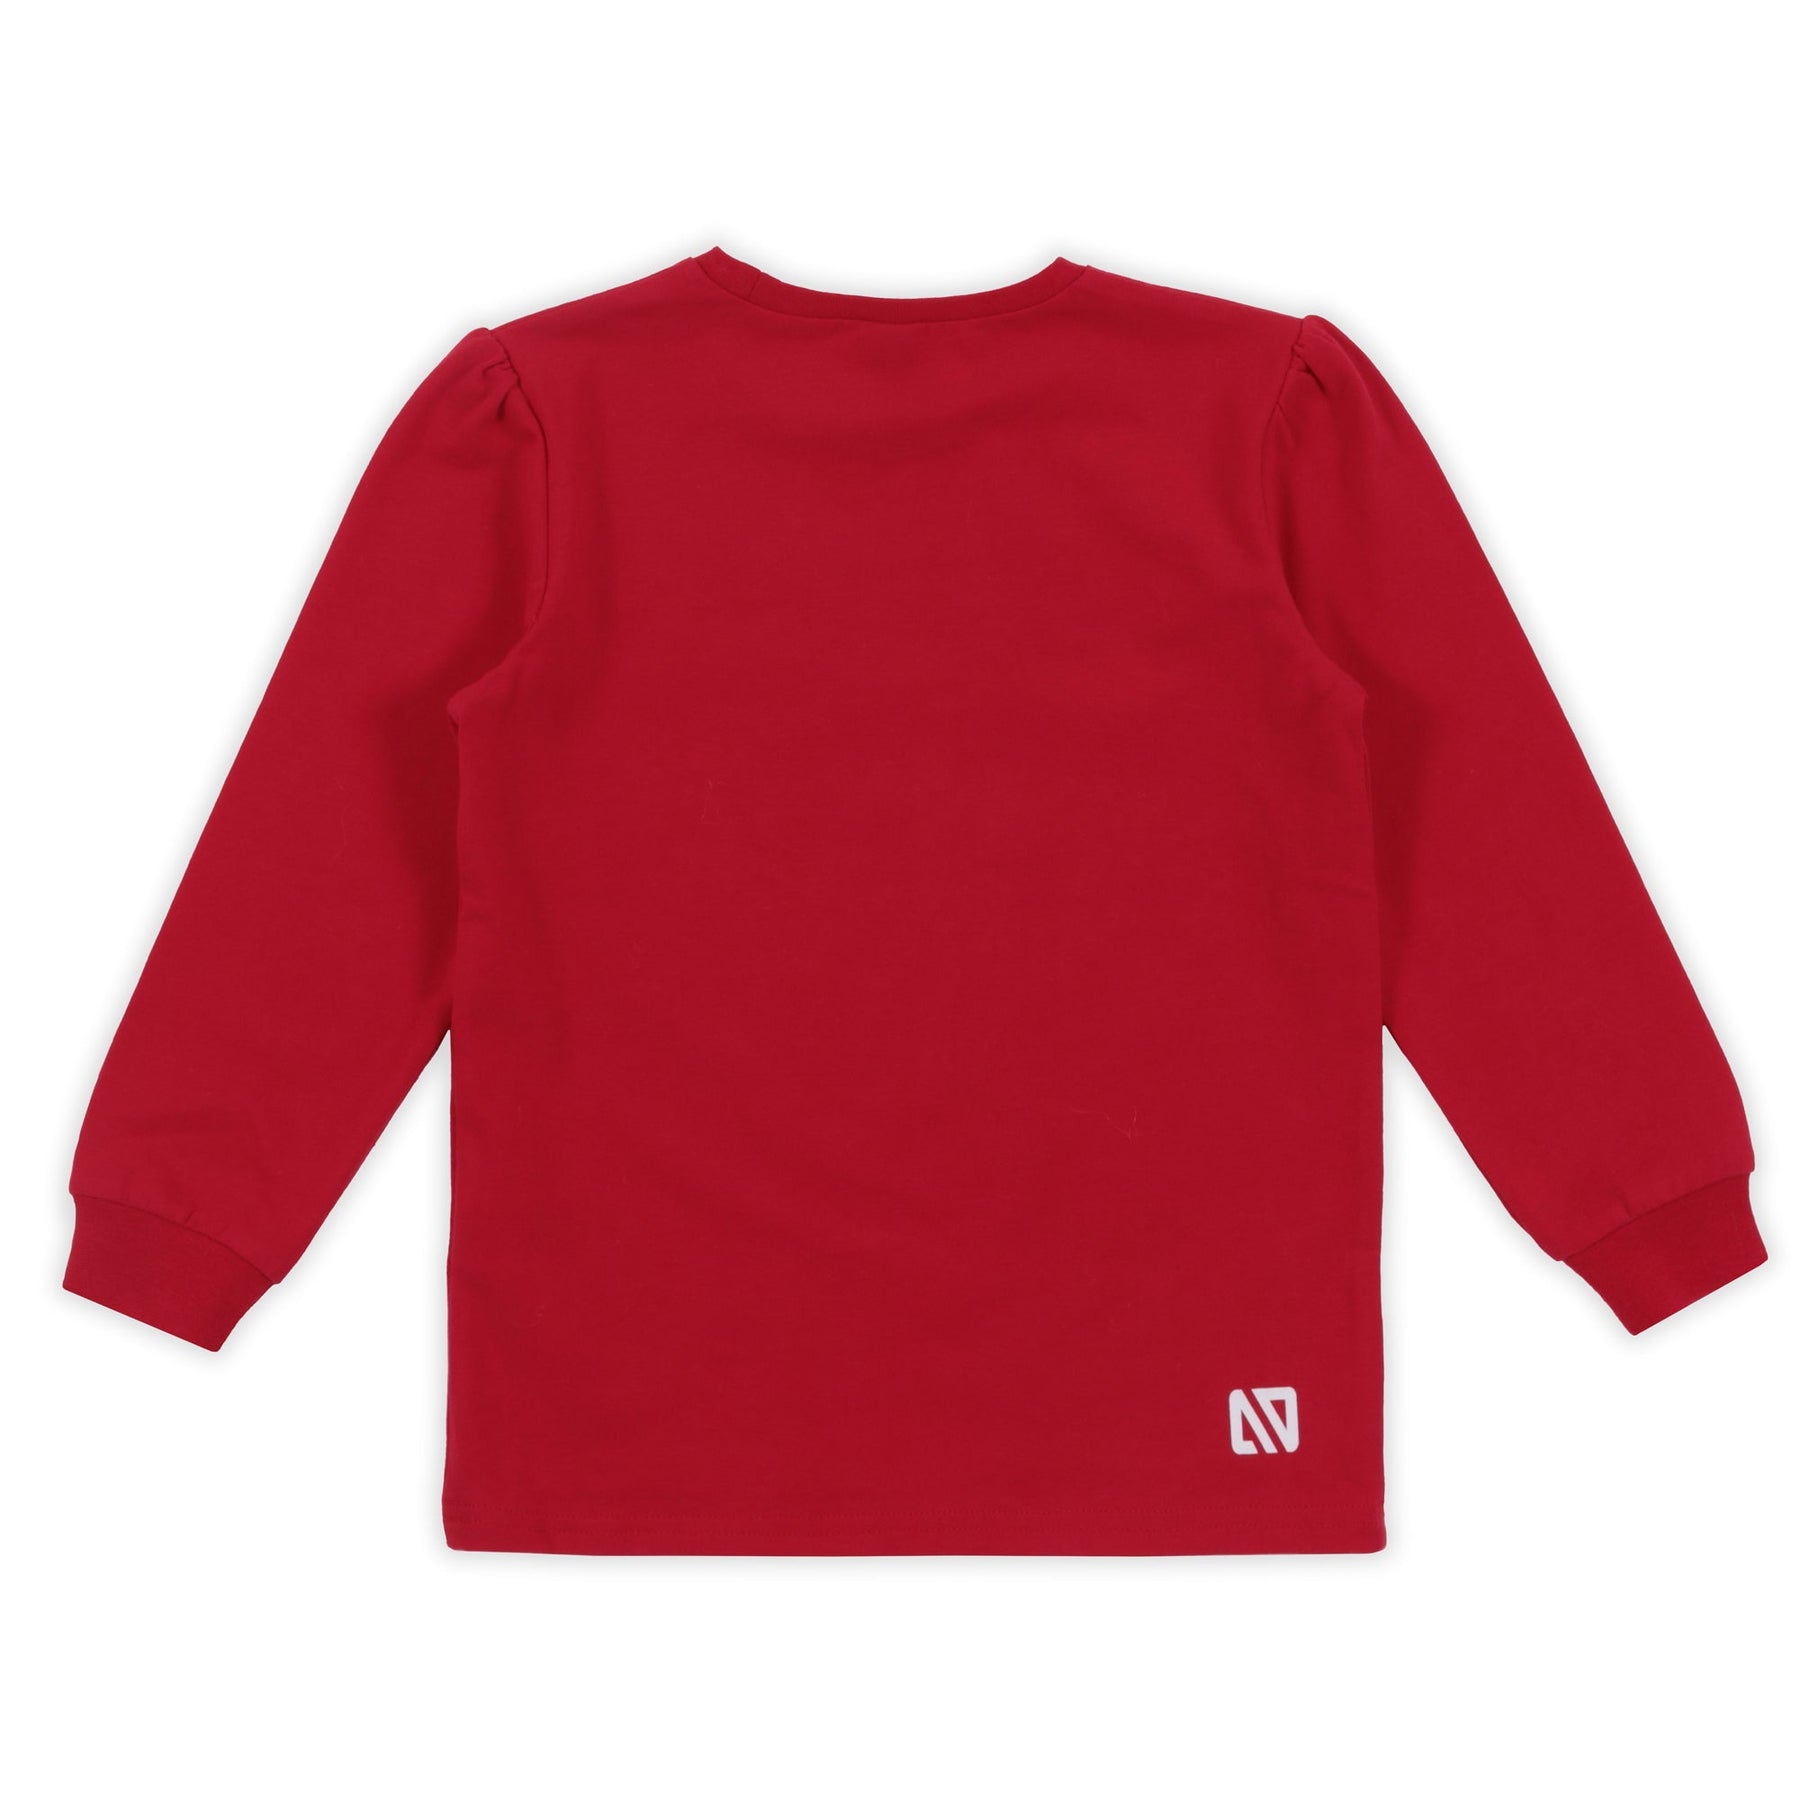 Pyjama pour enfant fille par Nano | F23P60 Rouge | Boutique Flos, vêtements mode pour bébés et enfants